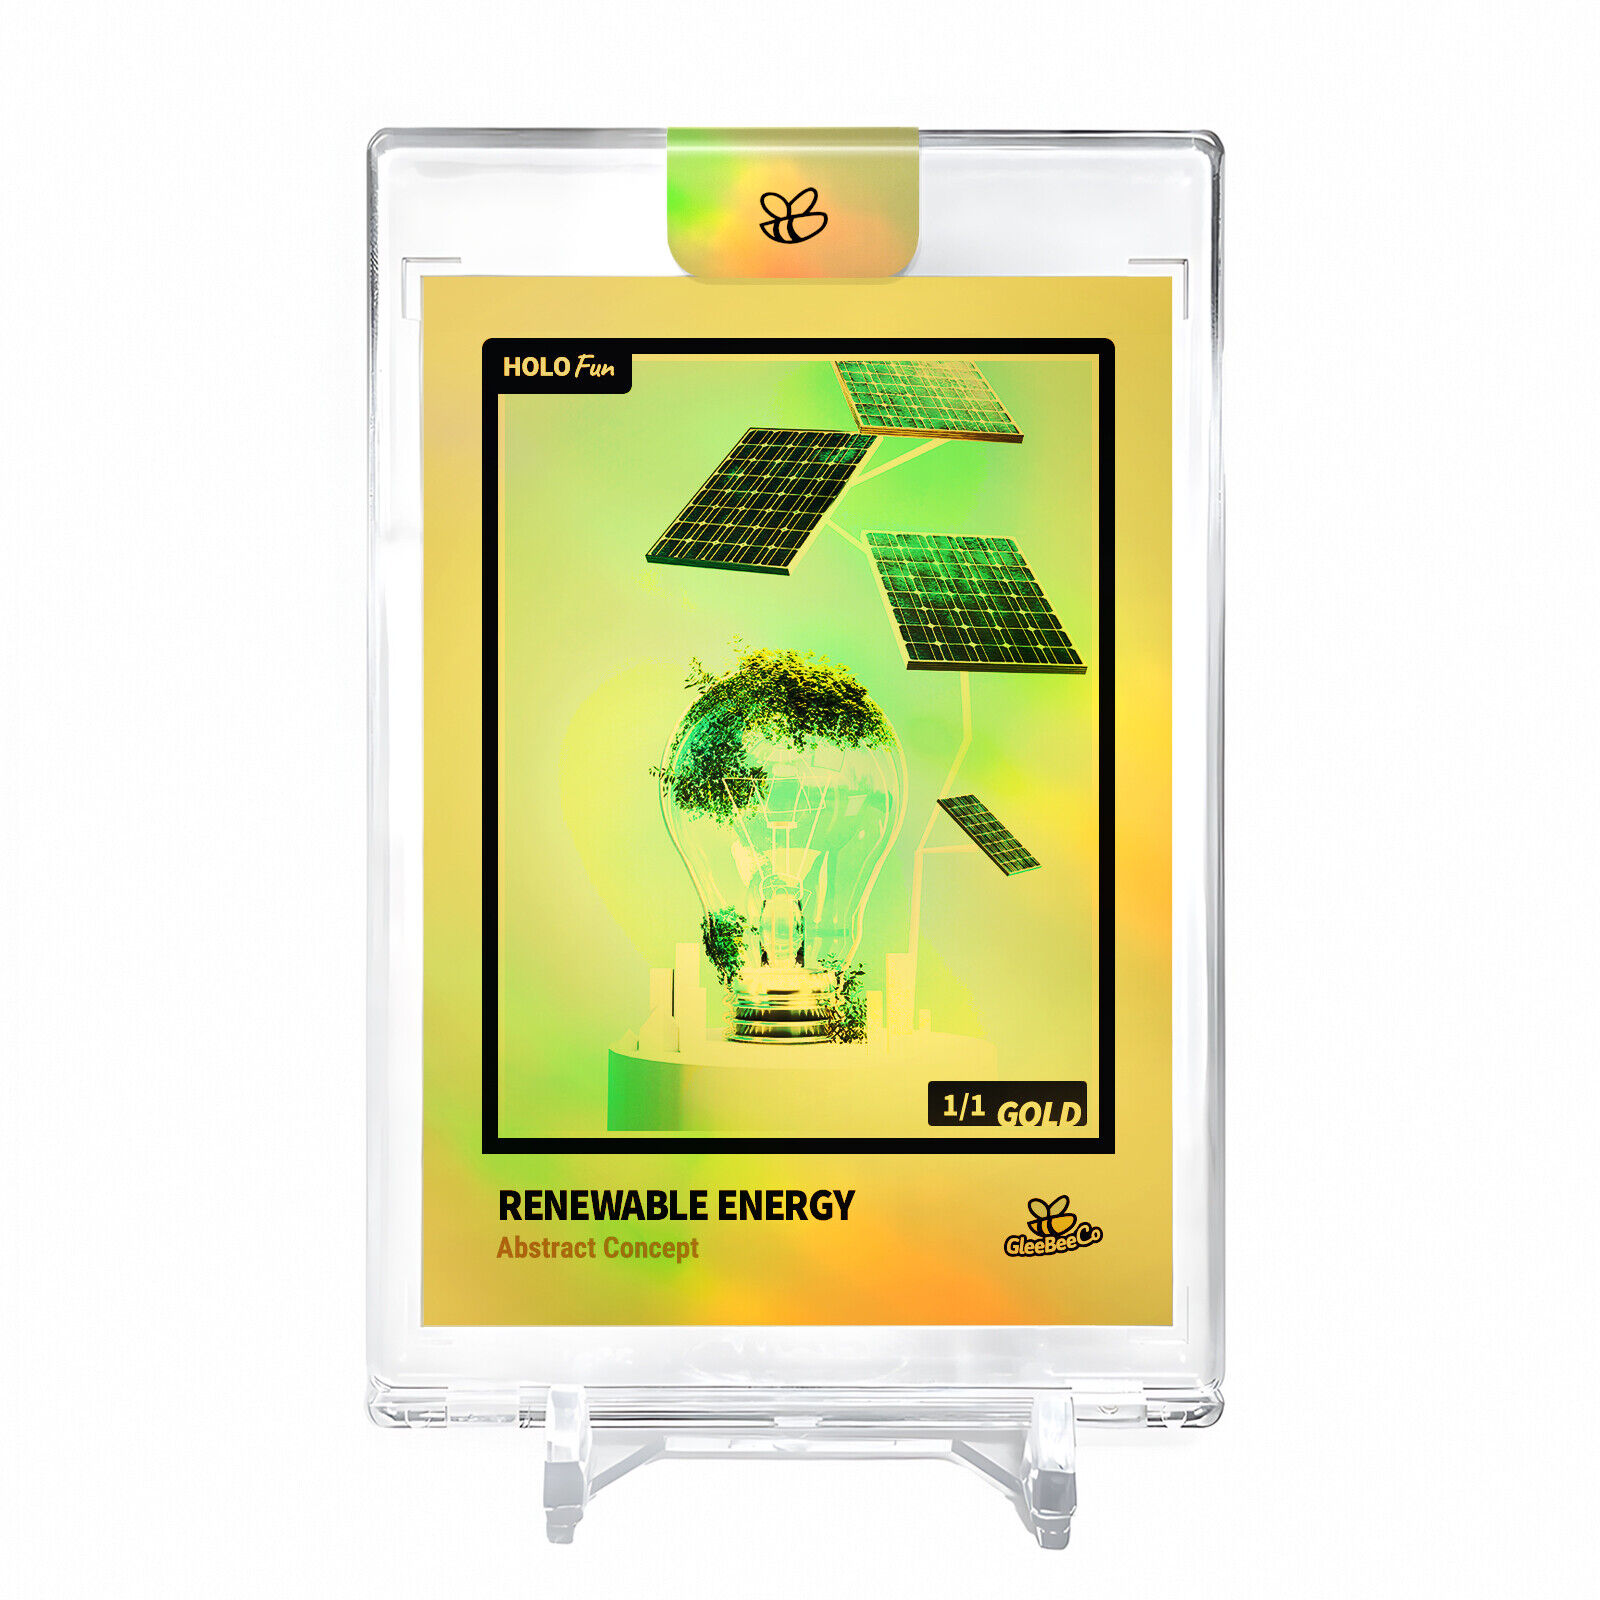 RENEWABLE ENERGY Abstract Concept Holo Gold Card 2023 GleeBeeCo #RNAS-G 1/1